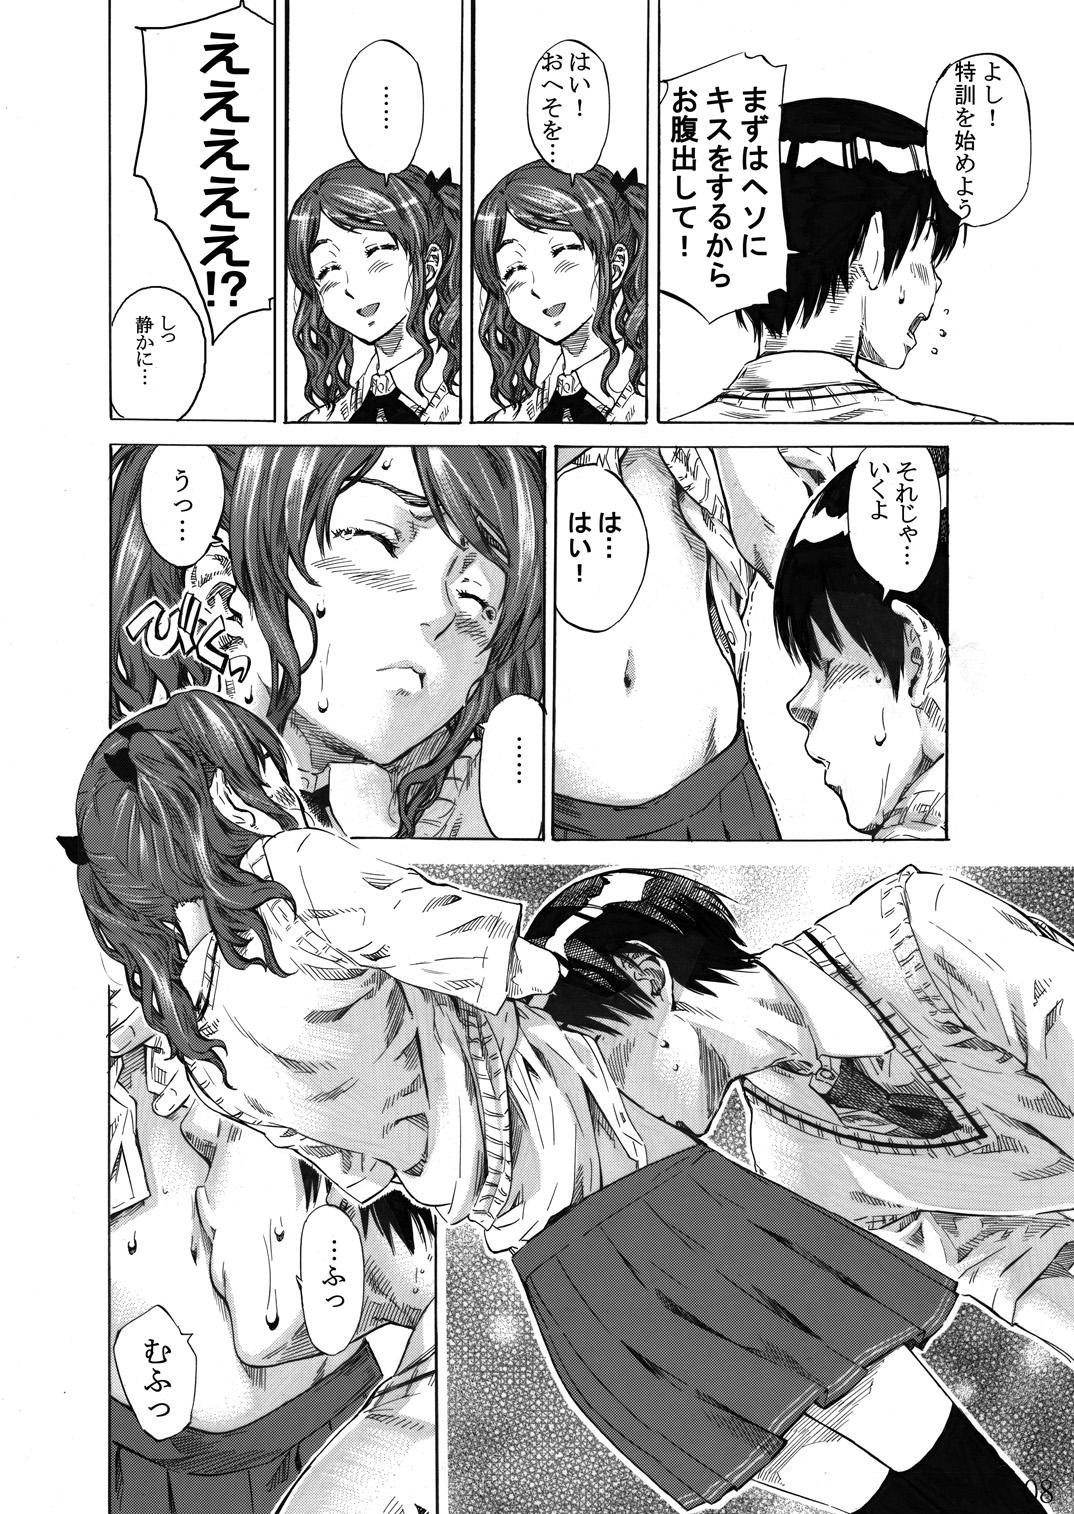 Euro Nakata-san ga Fukafuka sugite Ikiru no ga Tsurai orz - Amagami Women Sucking Dicks - Page 7